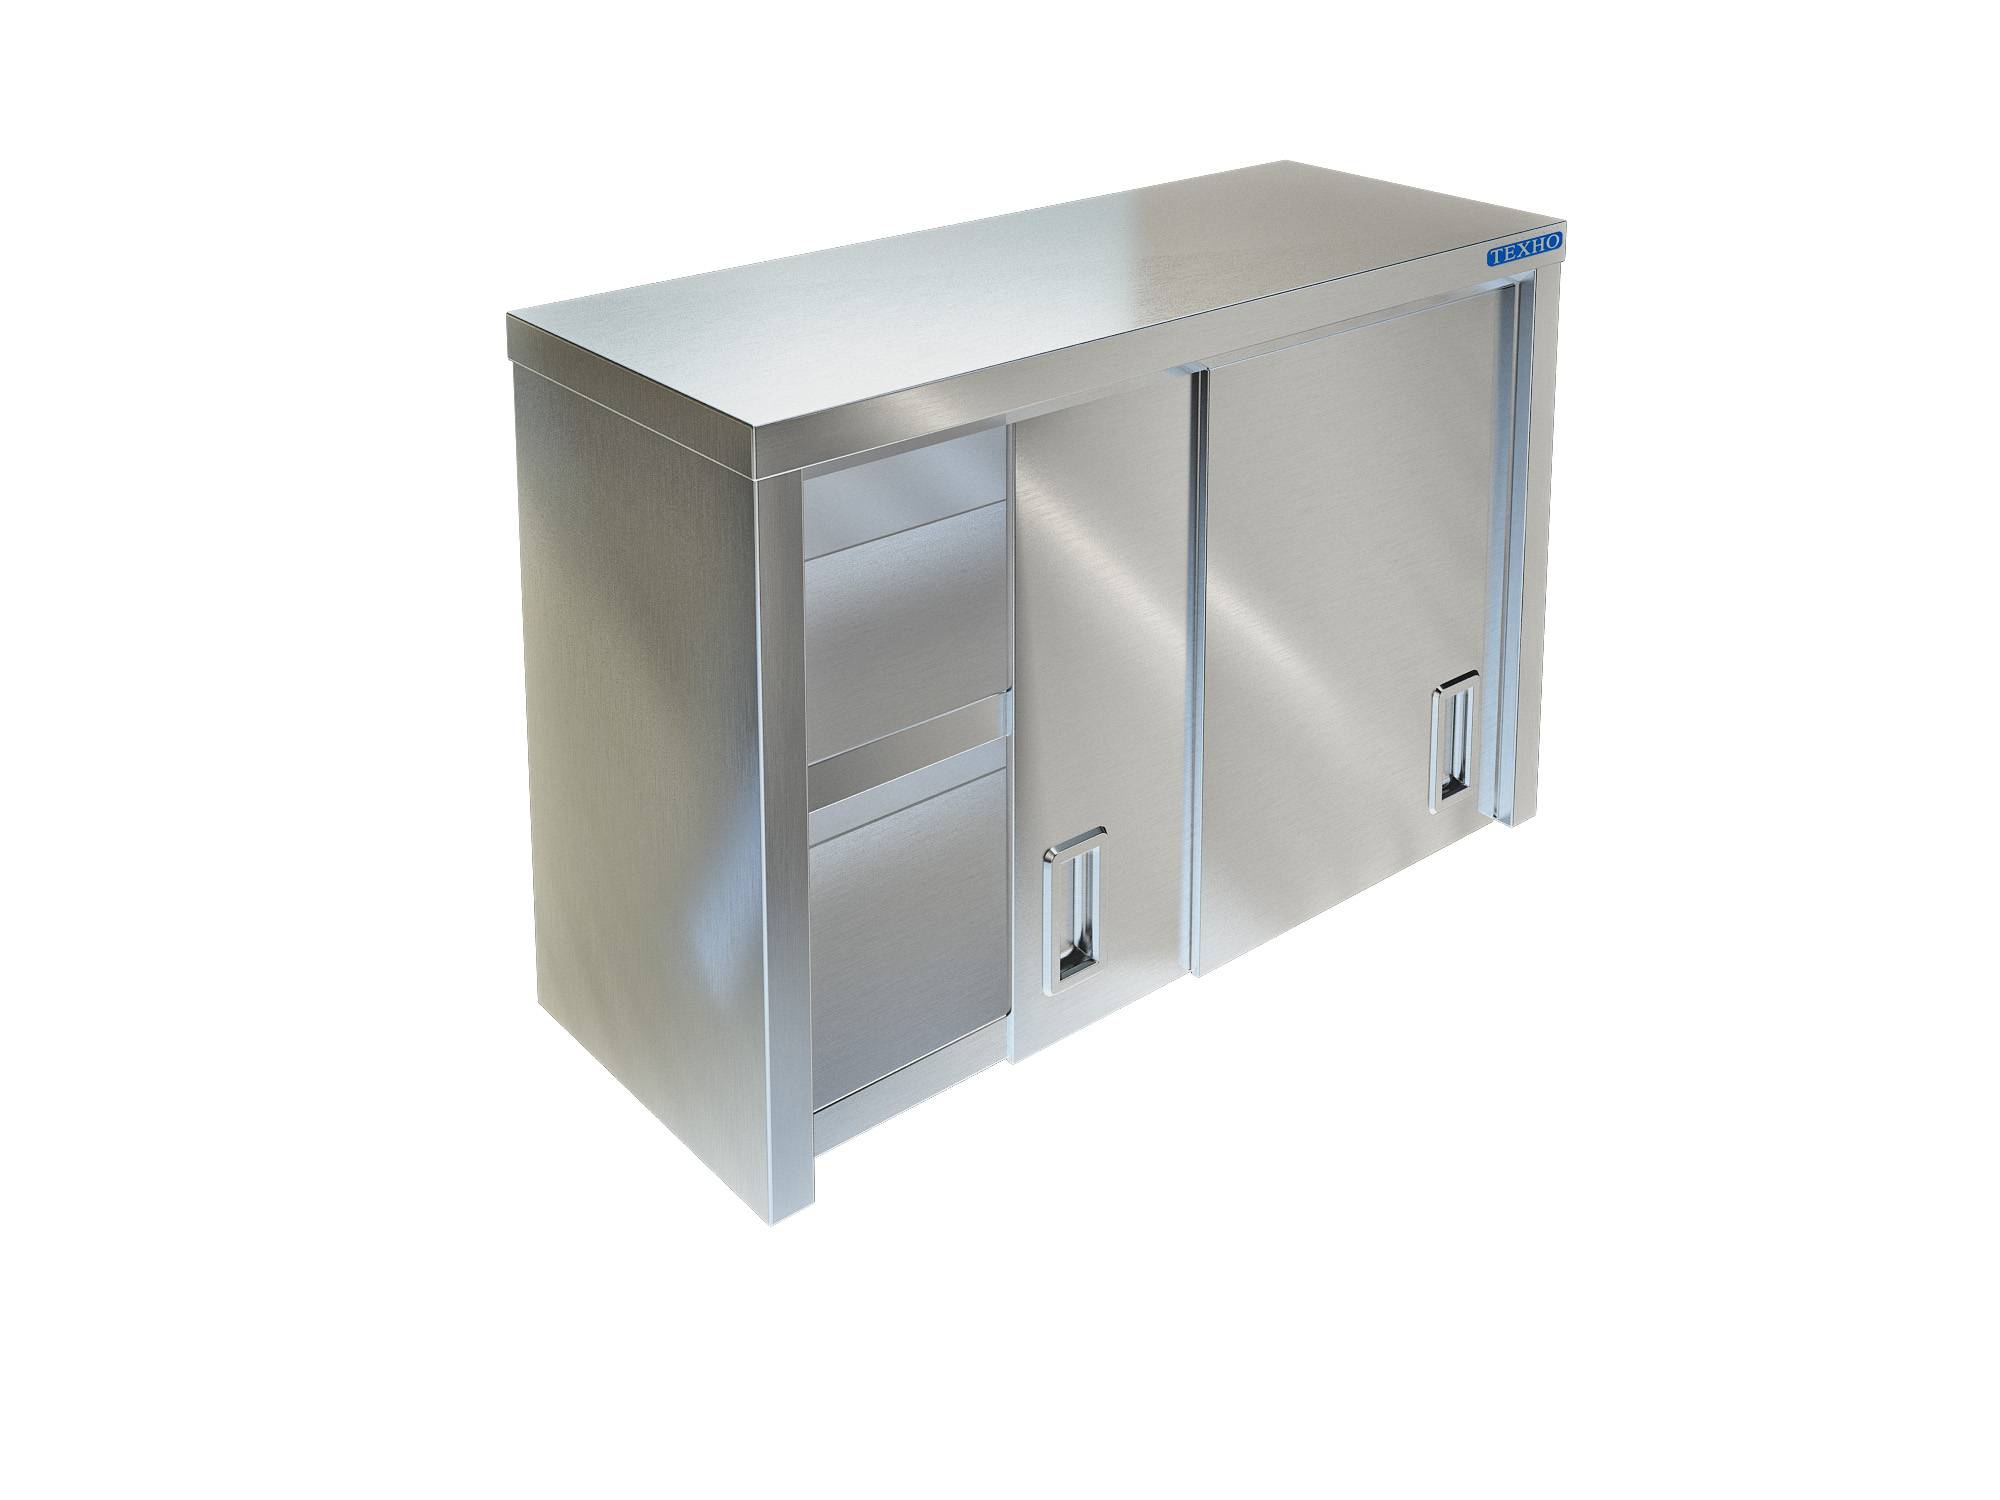 Фото - полка-шкаф для кухни с дверками из нержавейки пн-122/600 (600x350x600 мм)